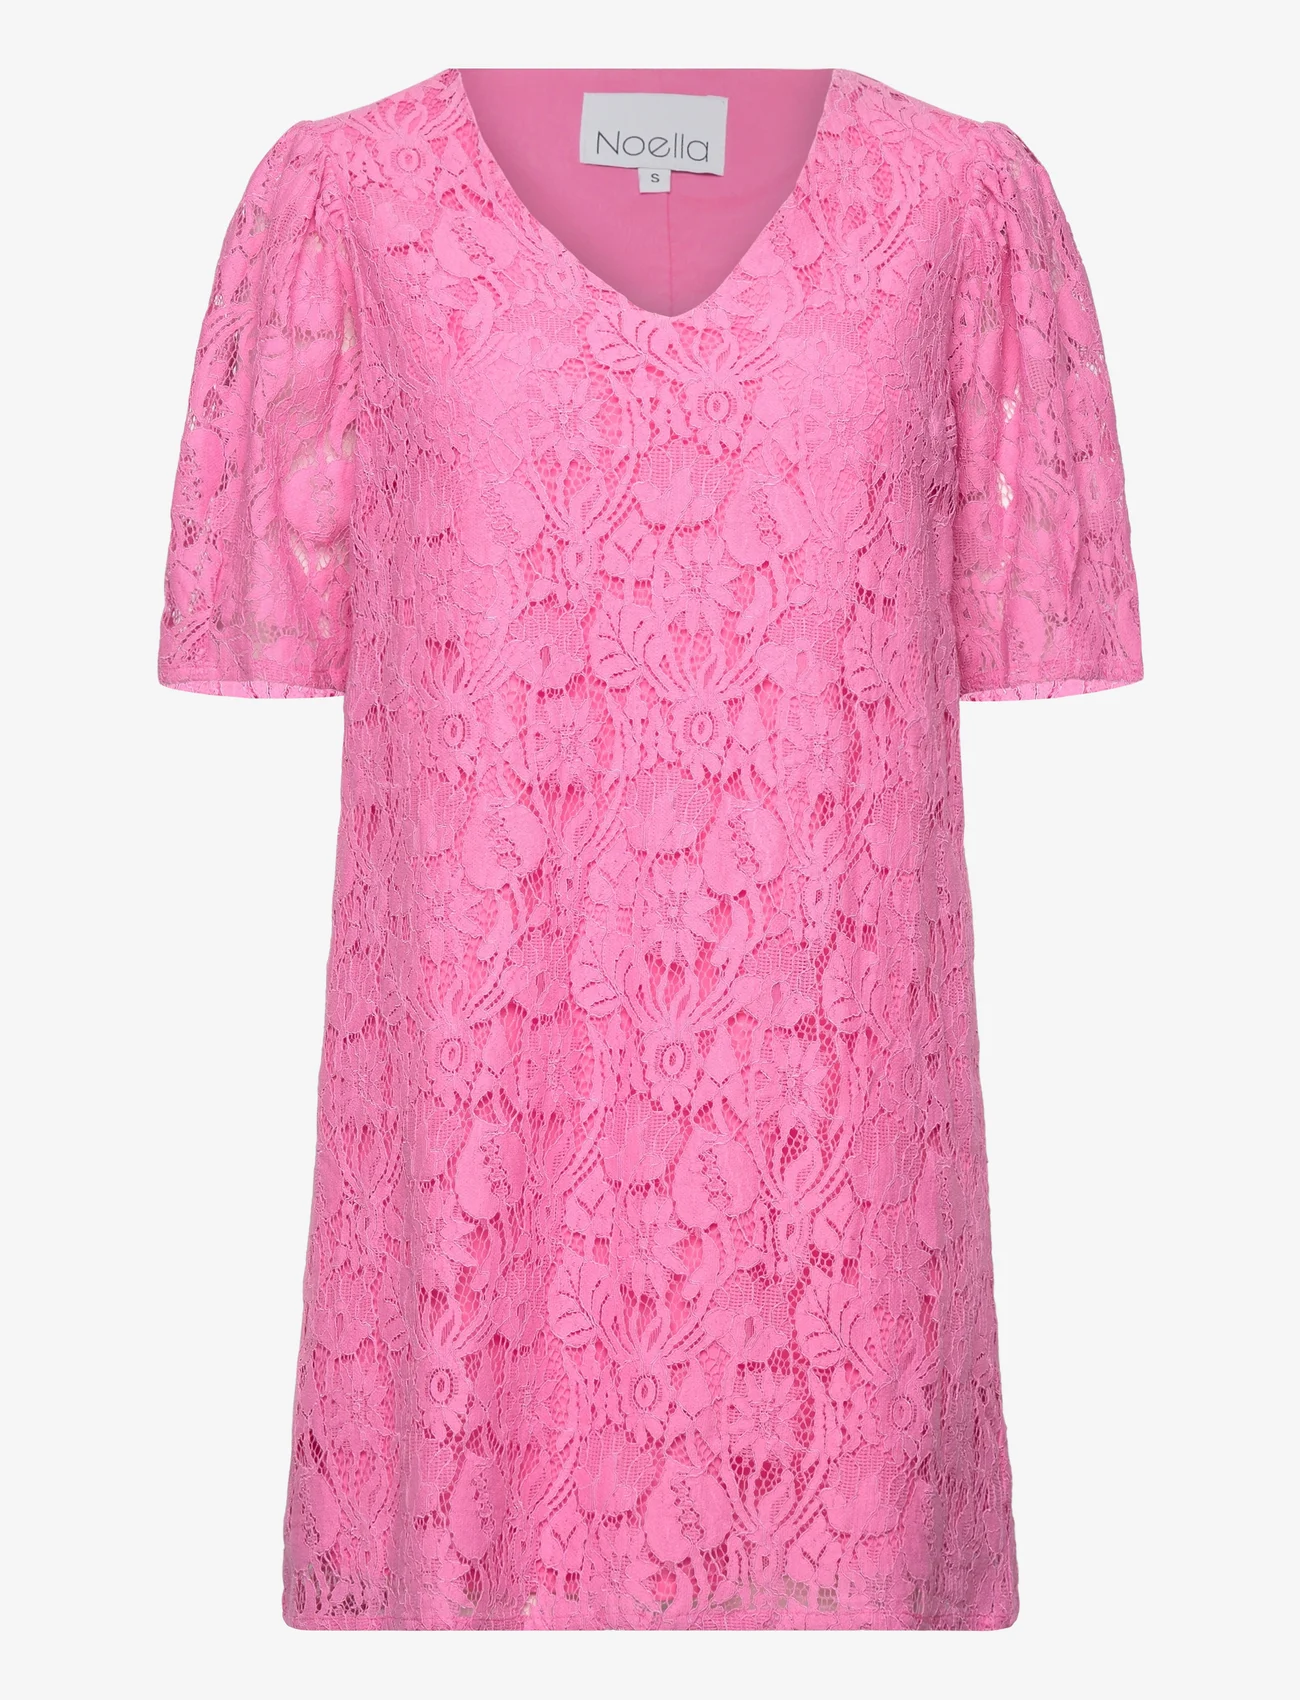 Noella - Macenna Short Dress - odzież imprezowa w cenach outletowych - candy pink - 0